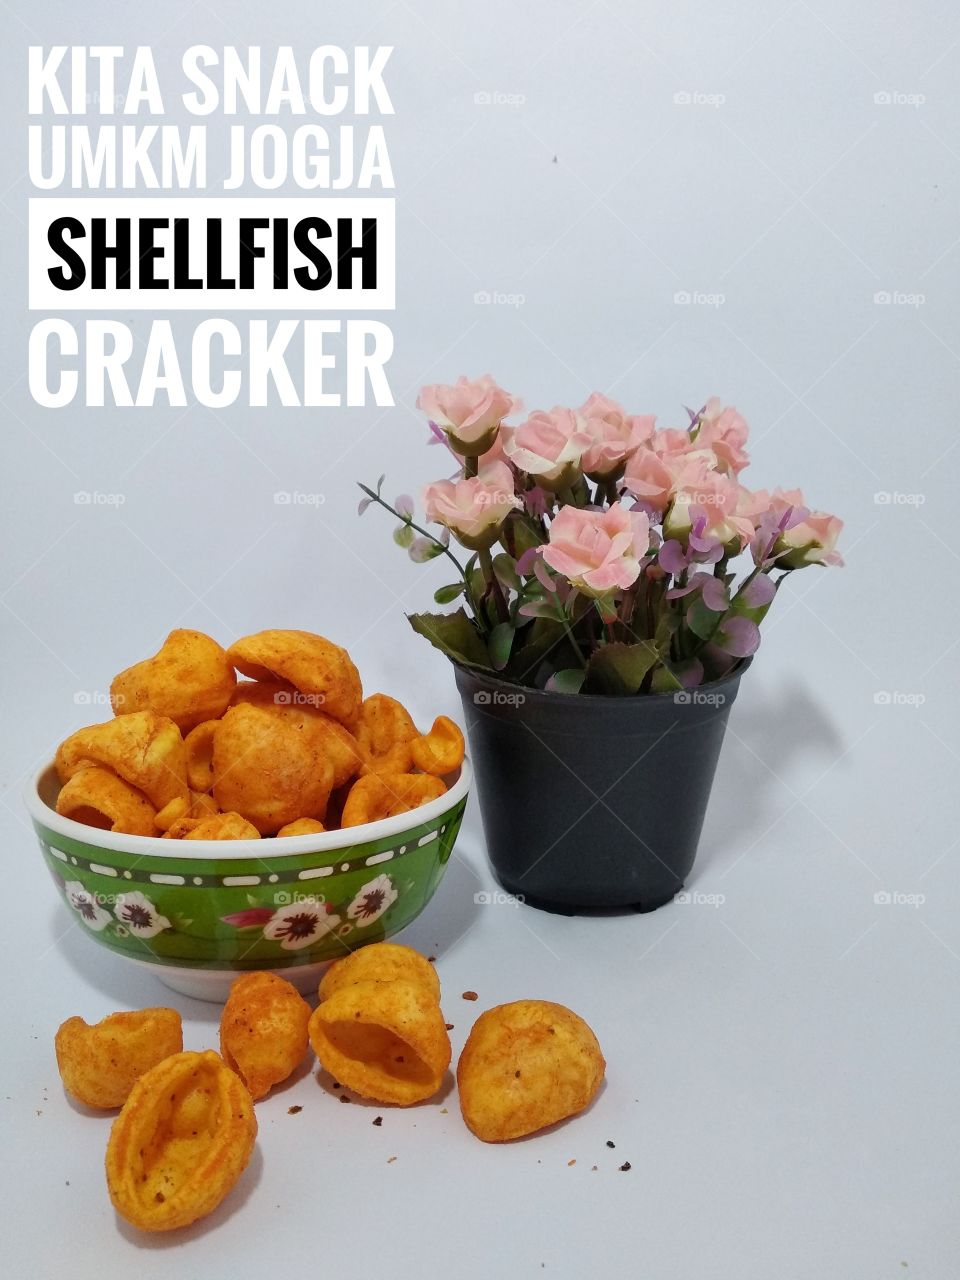 Shellfish Crackers made by Local Business in Yogyakarta